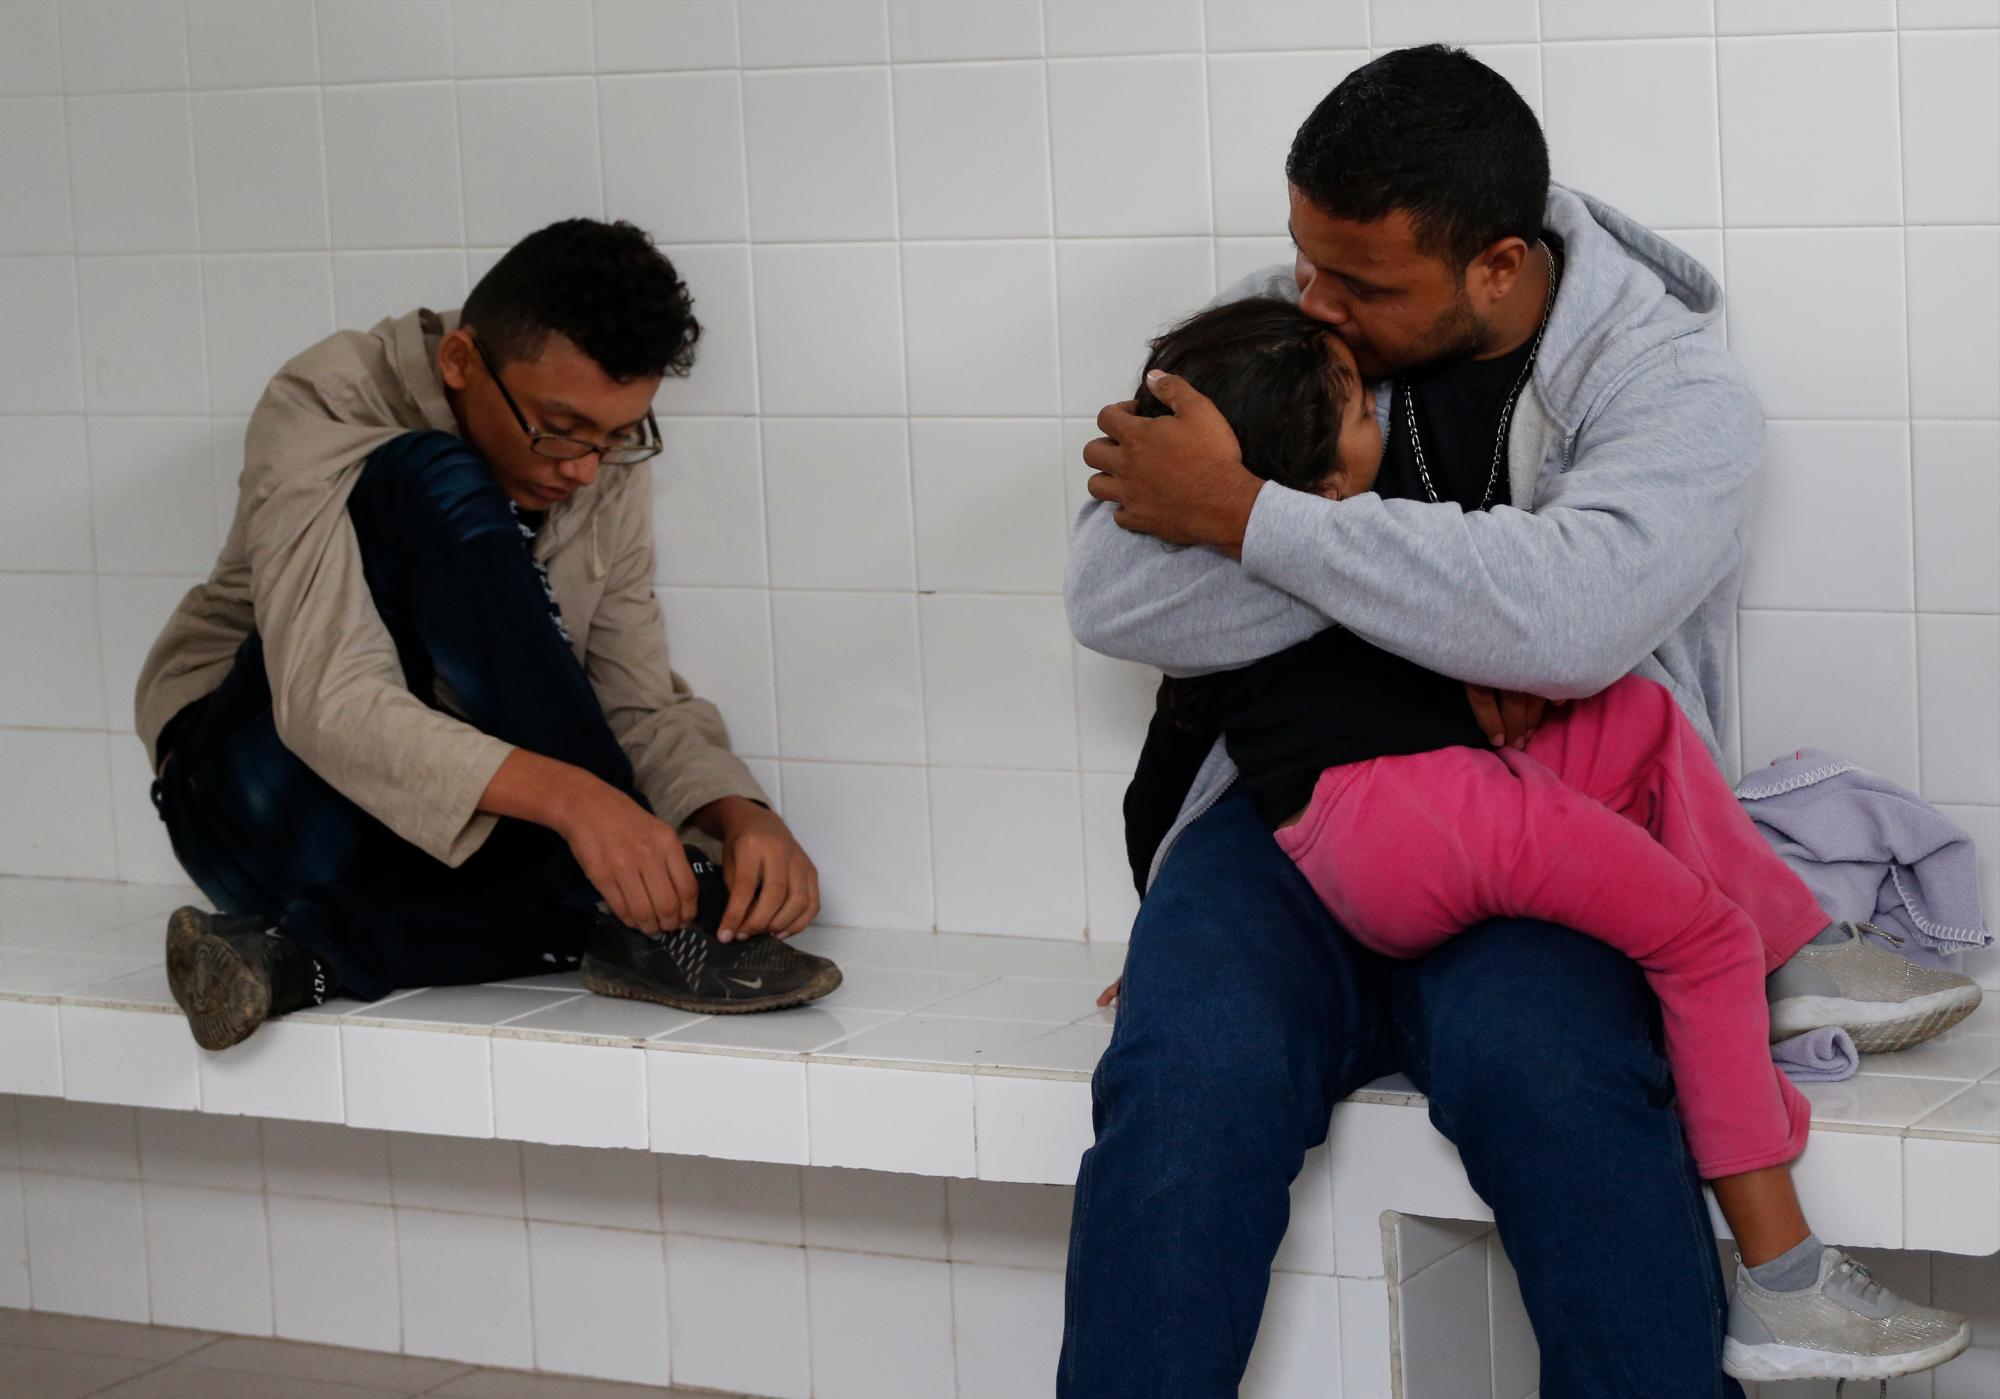 El migrante hondureño Noe, de 31 años, besa a su hija Marlene, de 4 años, mientras esperan dentro de una celda de detención de inmigrantes después de ser retirado de un autobús que se dirige al norte de Comitan, estado de Chiapas, México, domingo 16 de junio de 2019.